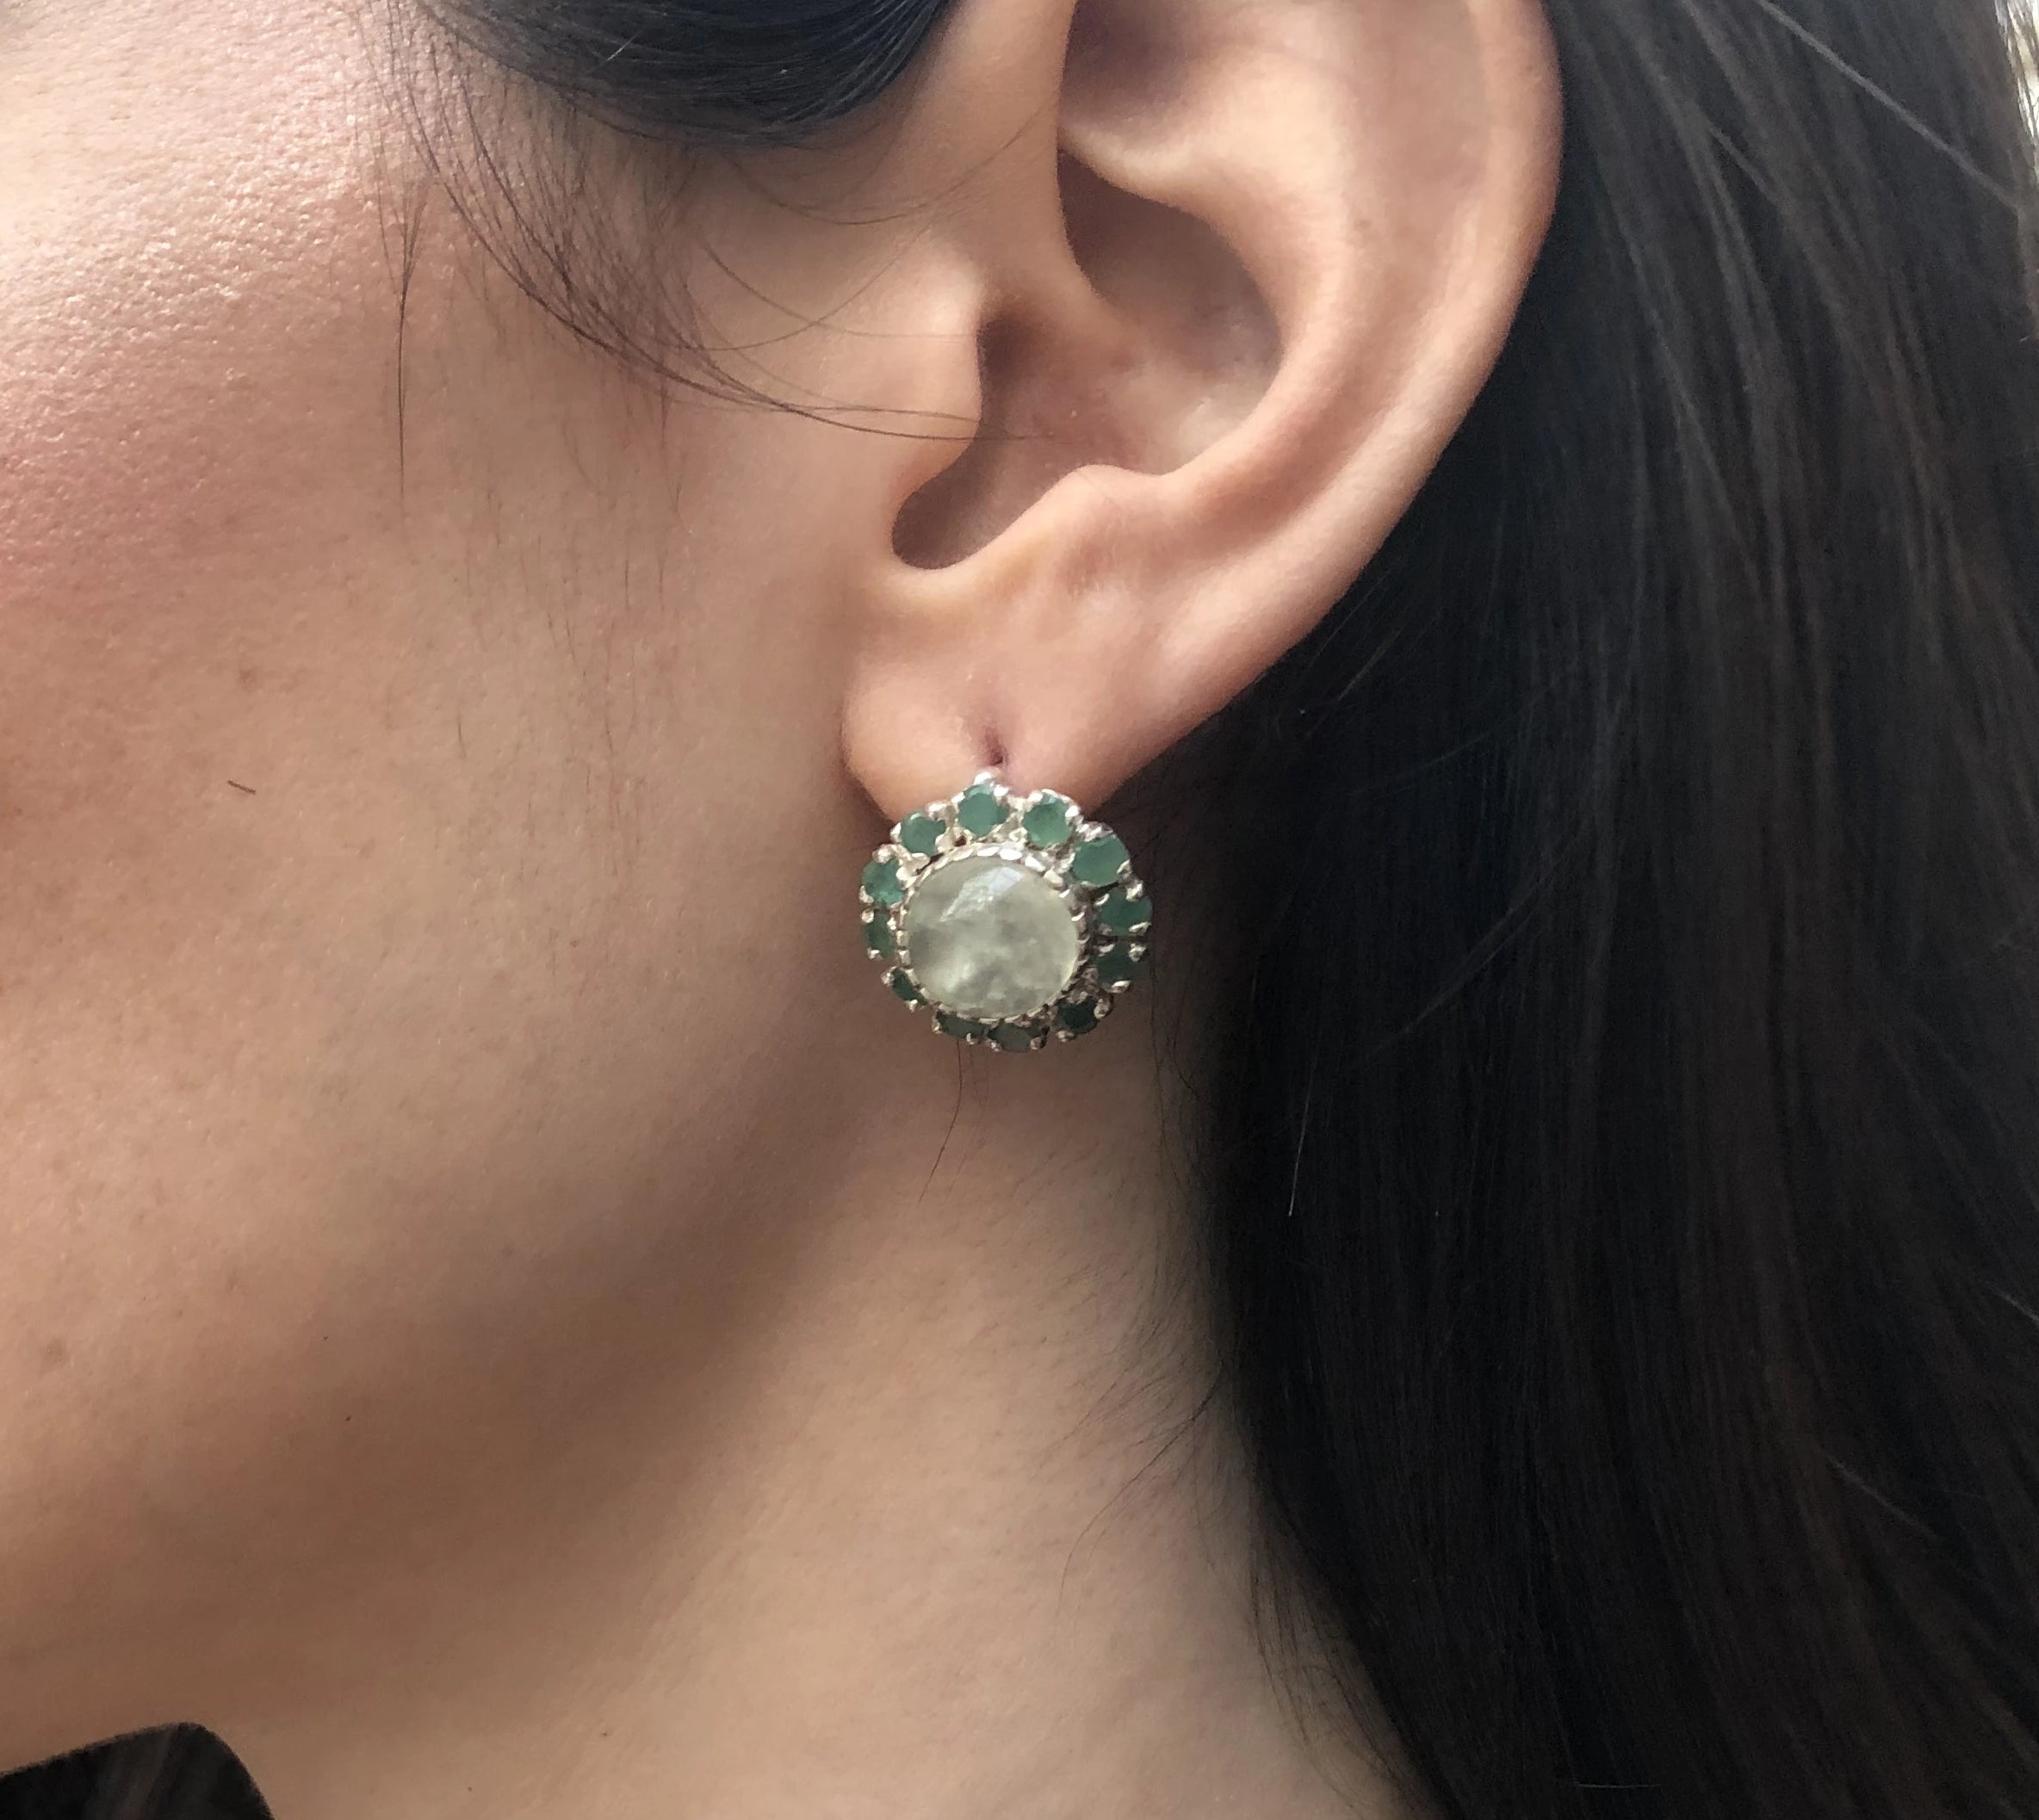 Victorian Earrings, Prehnite Earrings, Flower Earrings, May Birthstone, Green Earrings, Large Studs, Heavy Studs, Silver Earrings